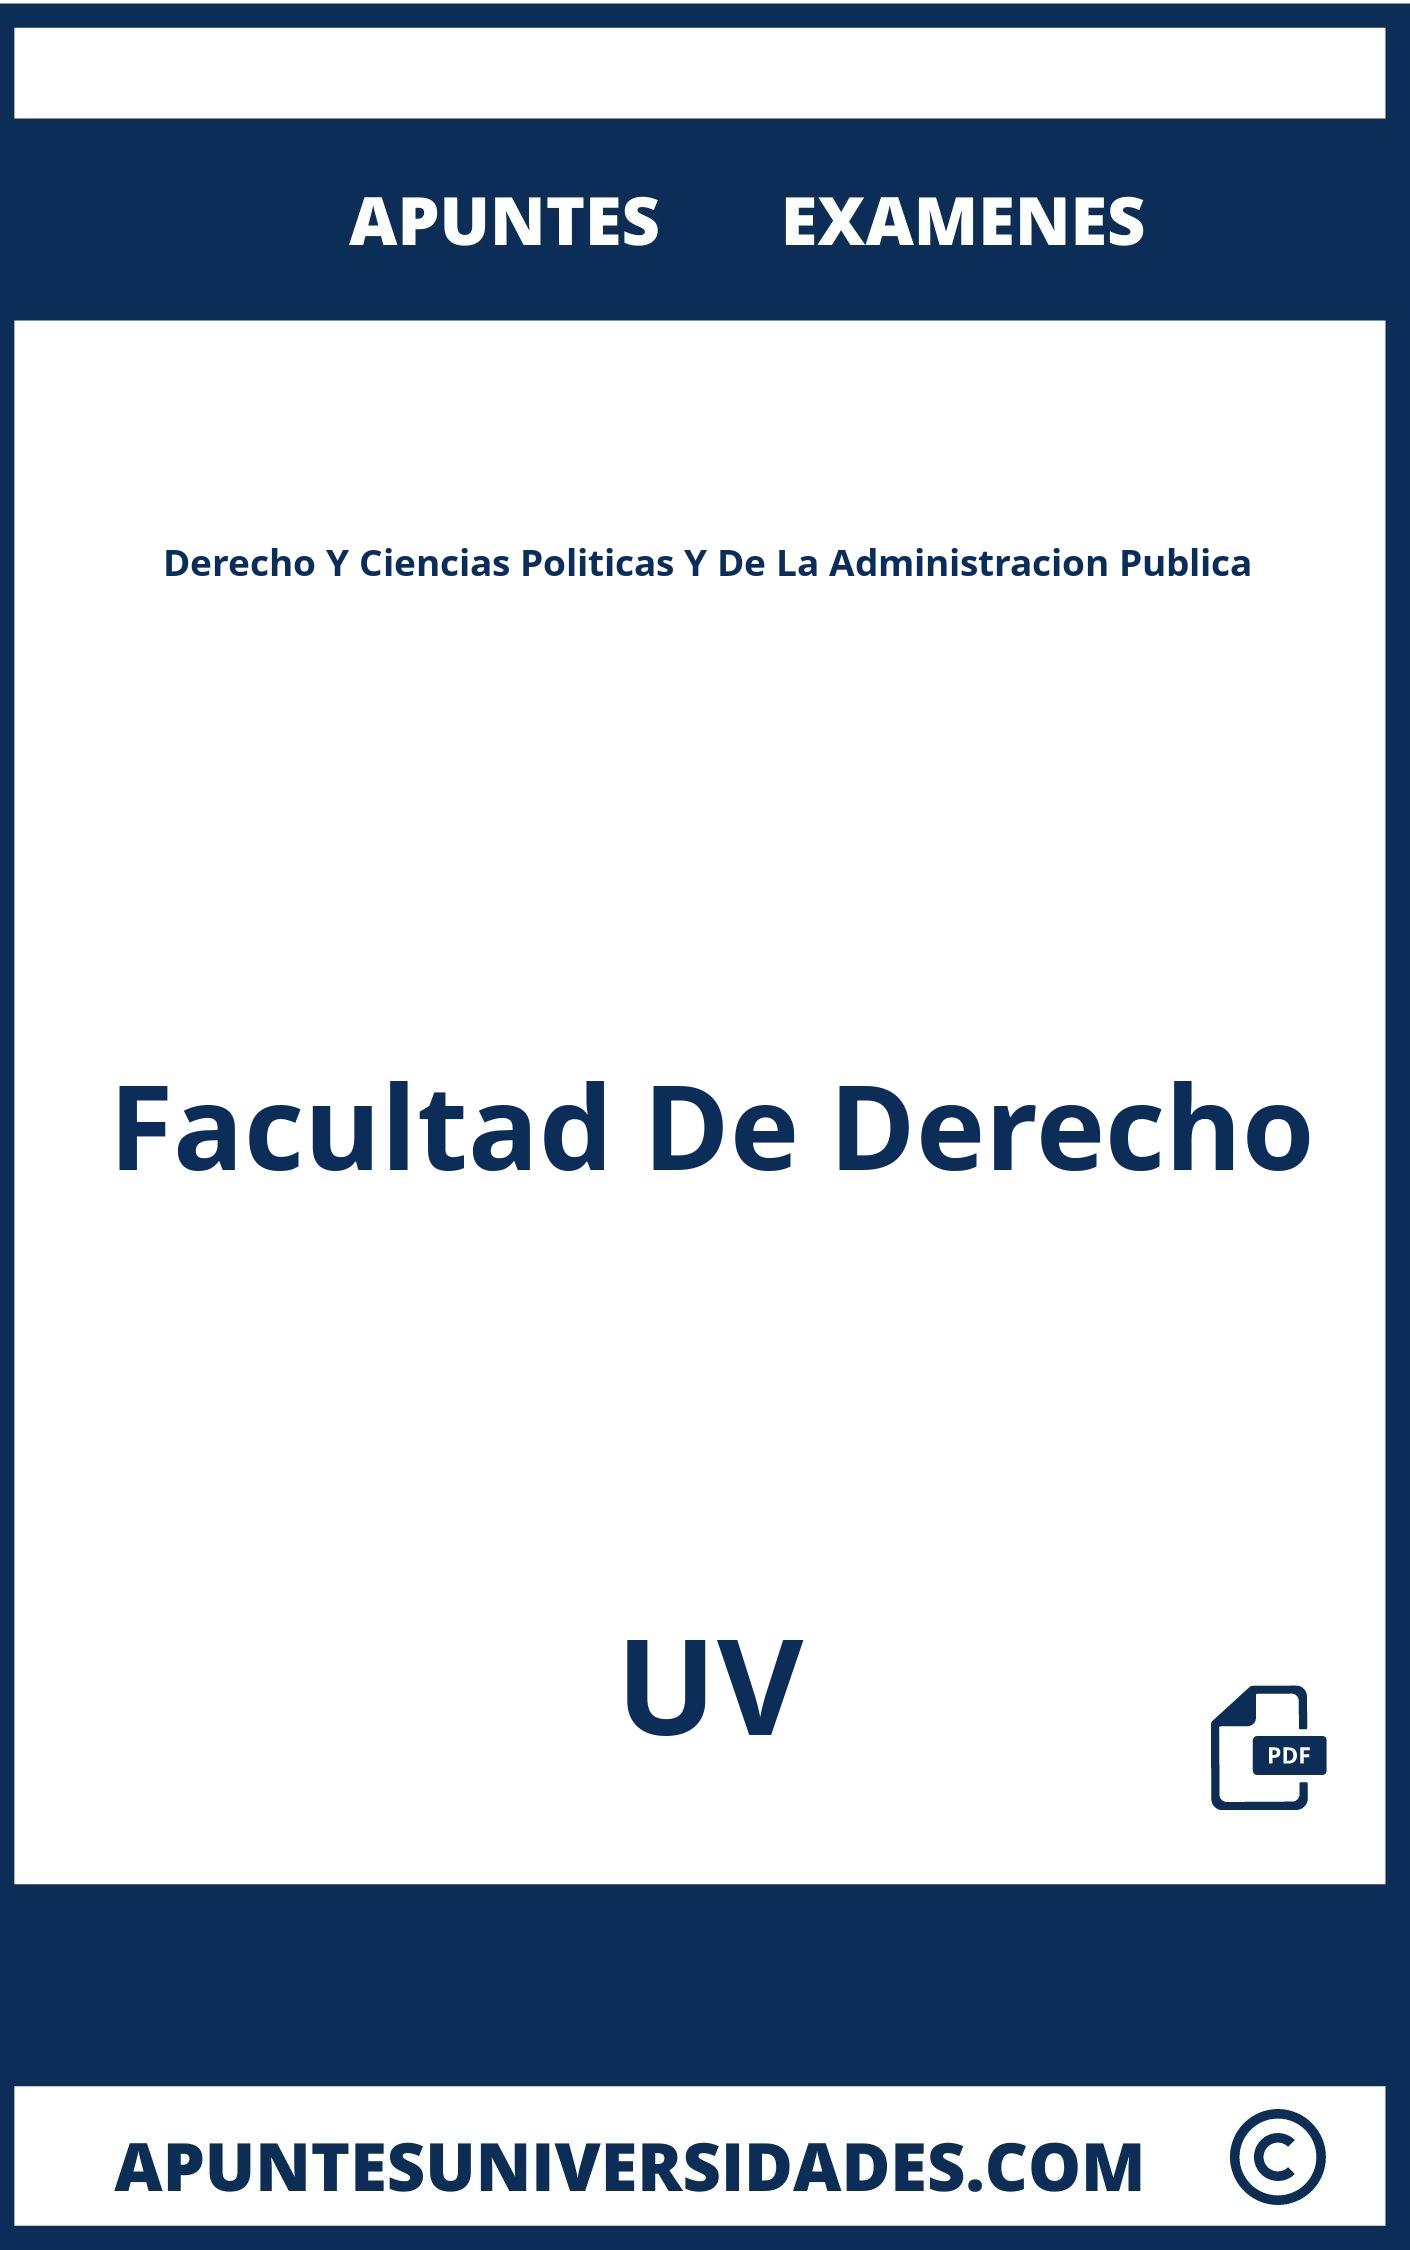 Examenes y Apuntes de Derecho Y Ciencias Politicas Y De La Administracion Publica UV